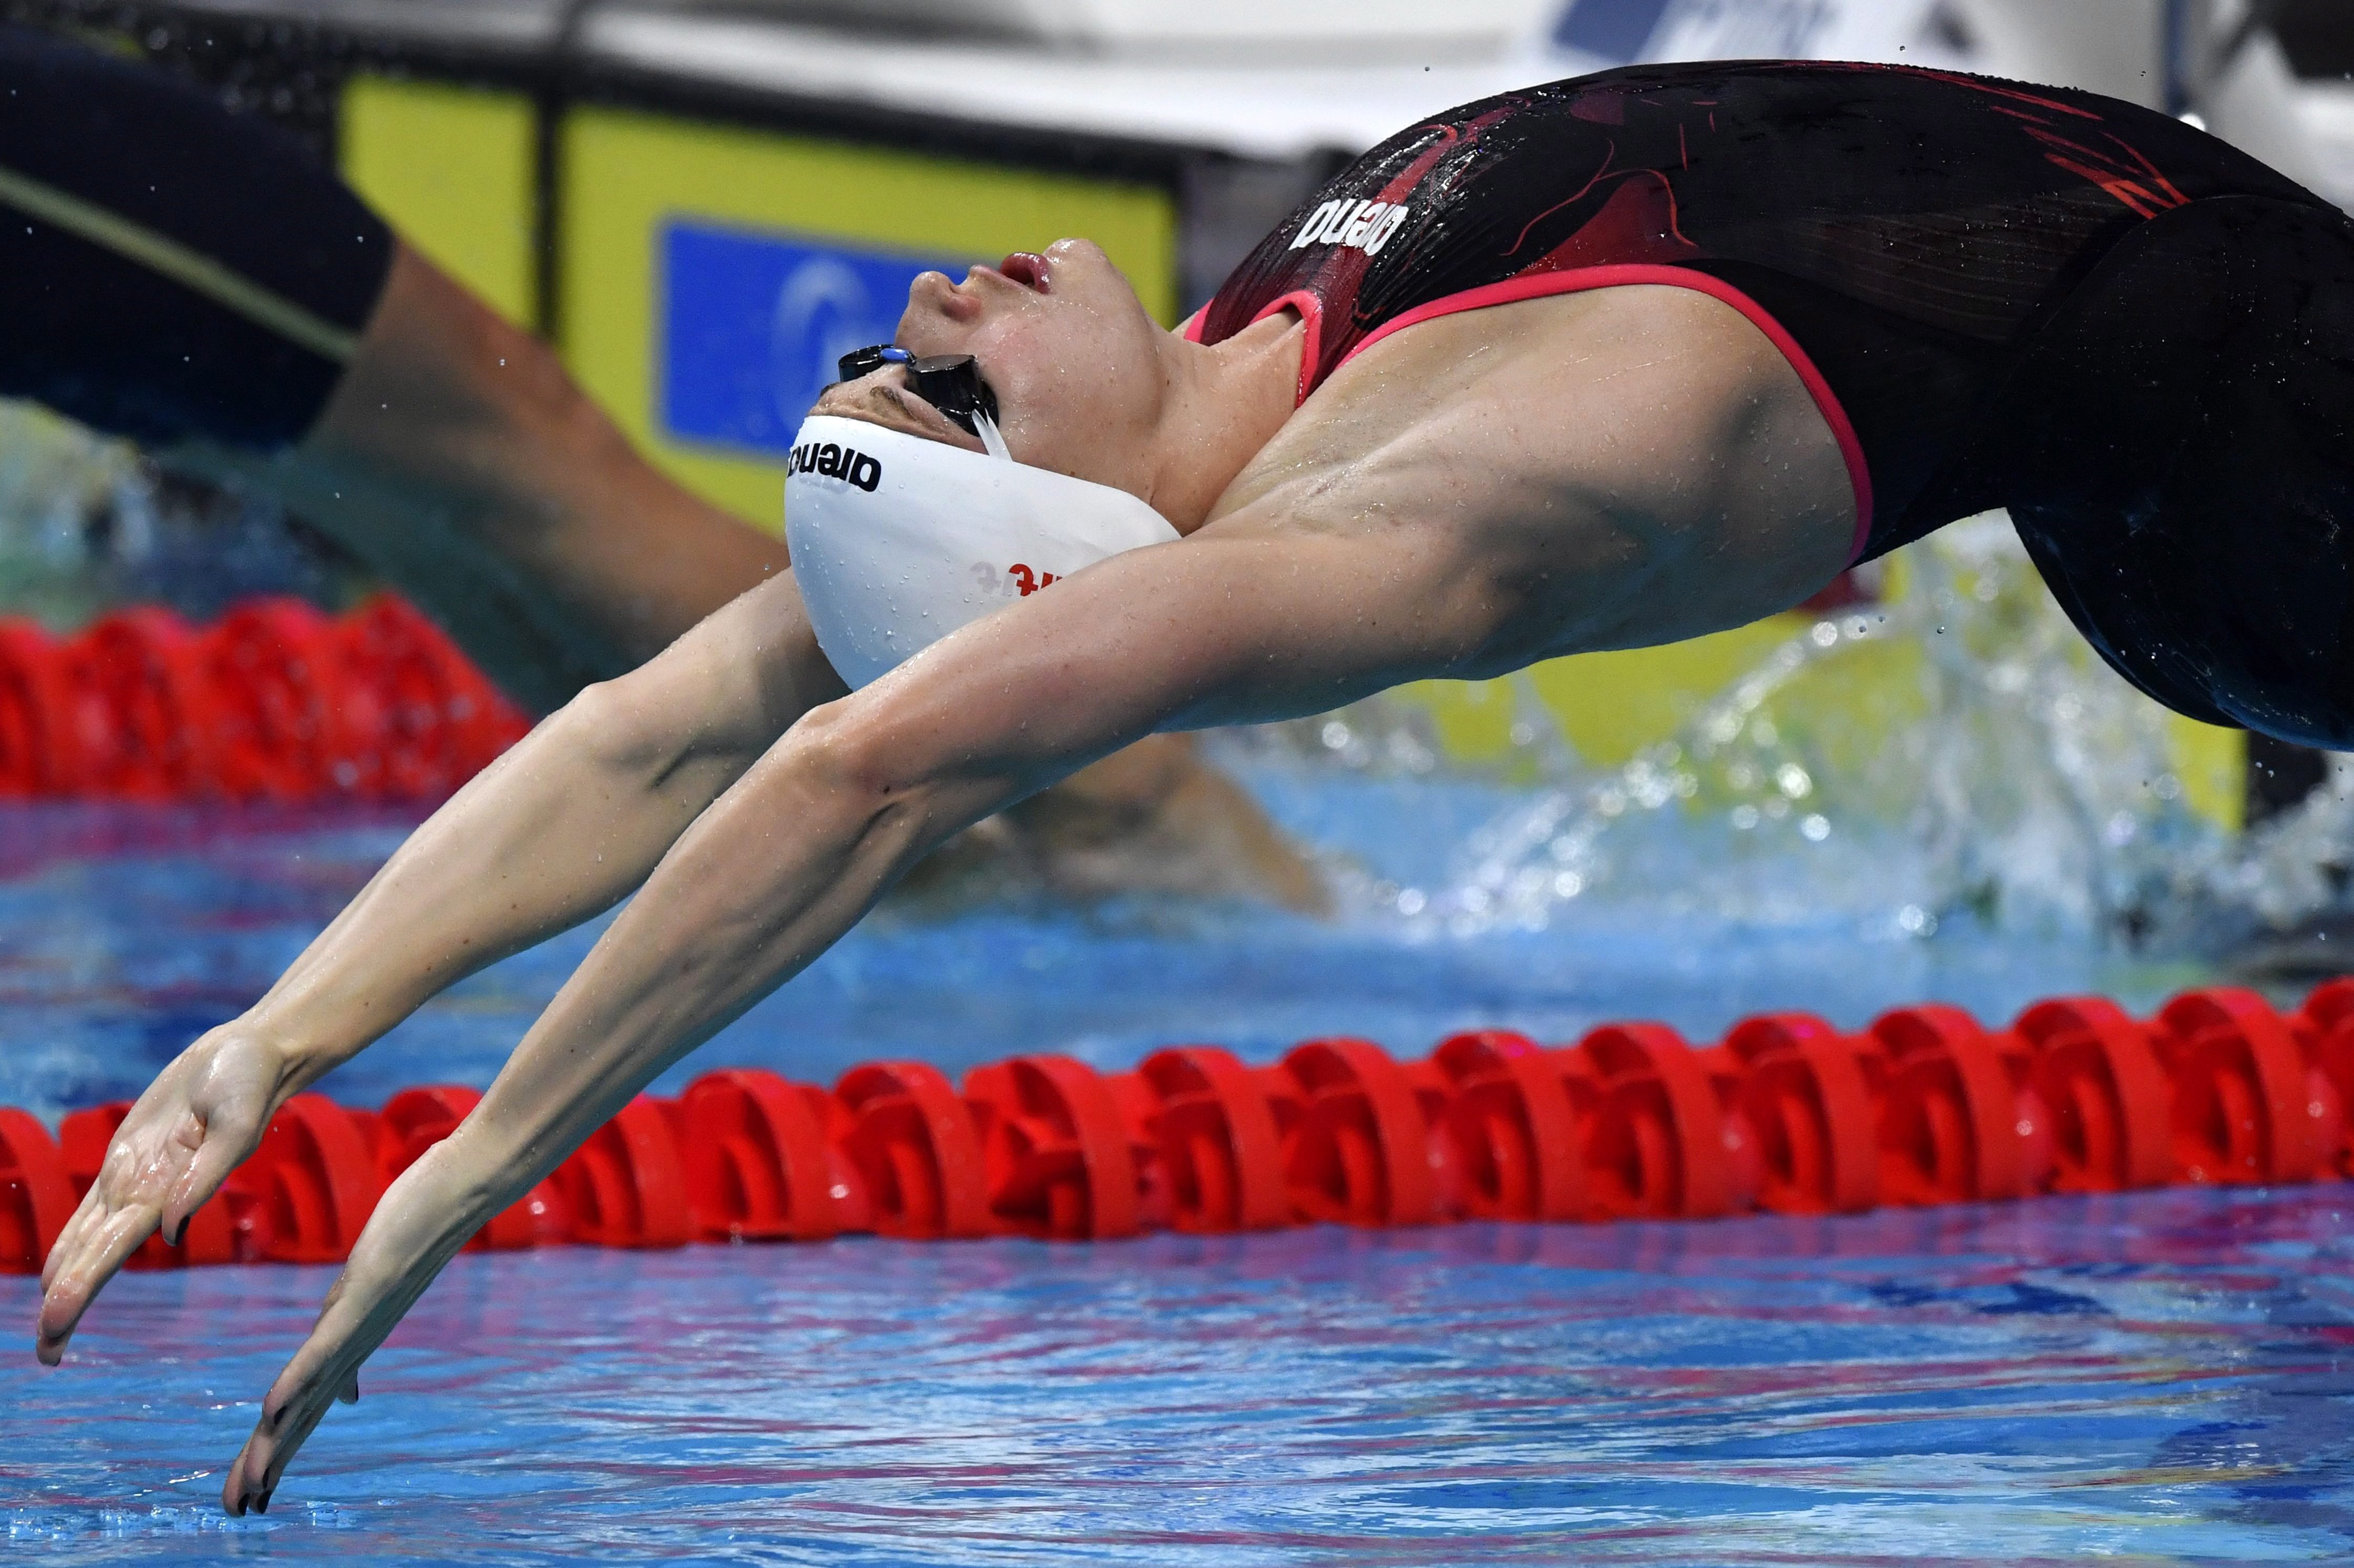 Hosszú Katinka hatalmasat úszva ezüstérmes lett 200 méter hátúszásban